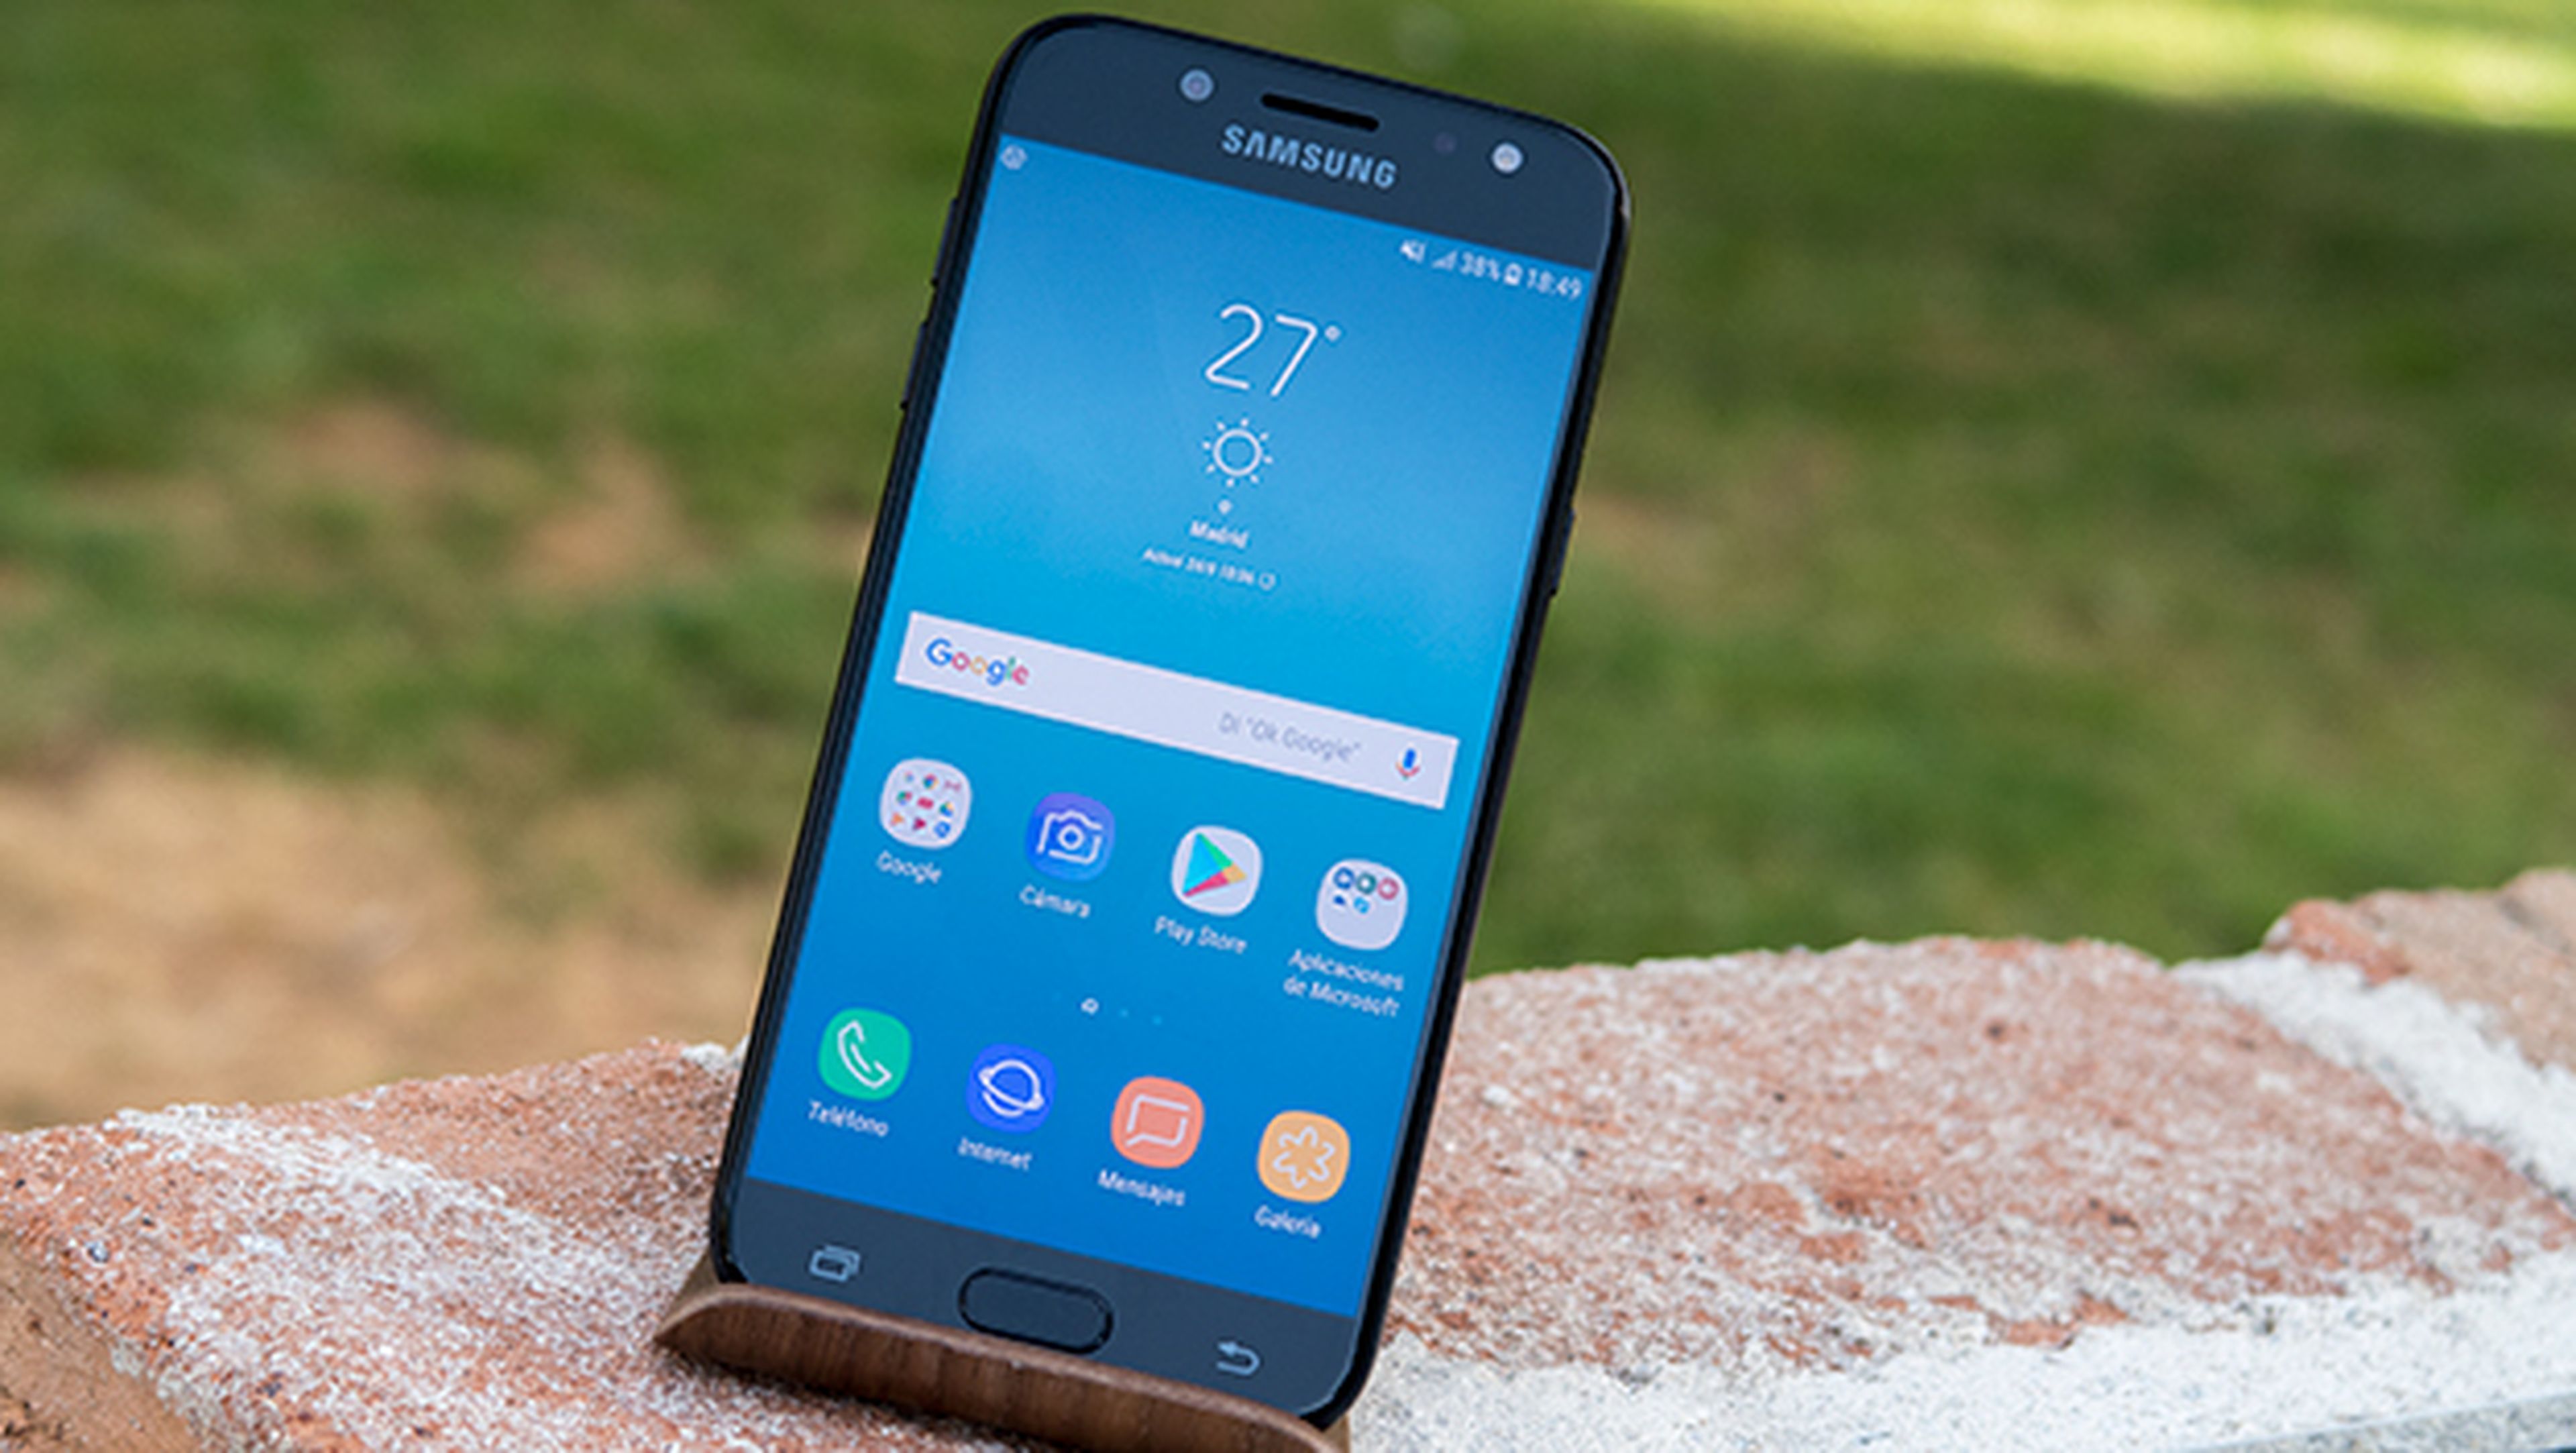 Samsung Galaxy J5 2017, análisis y opinión